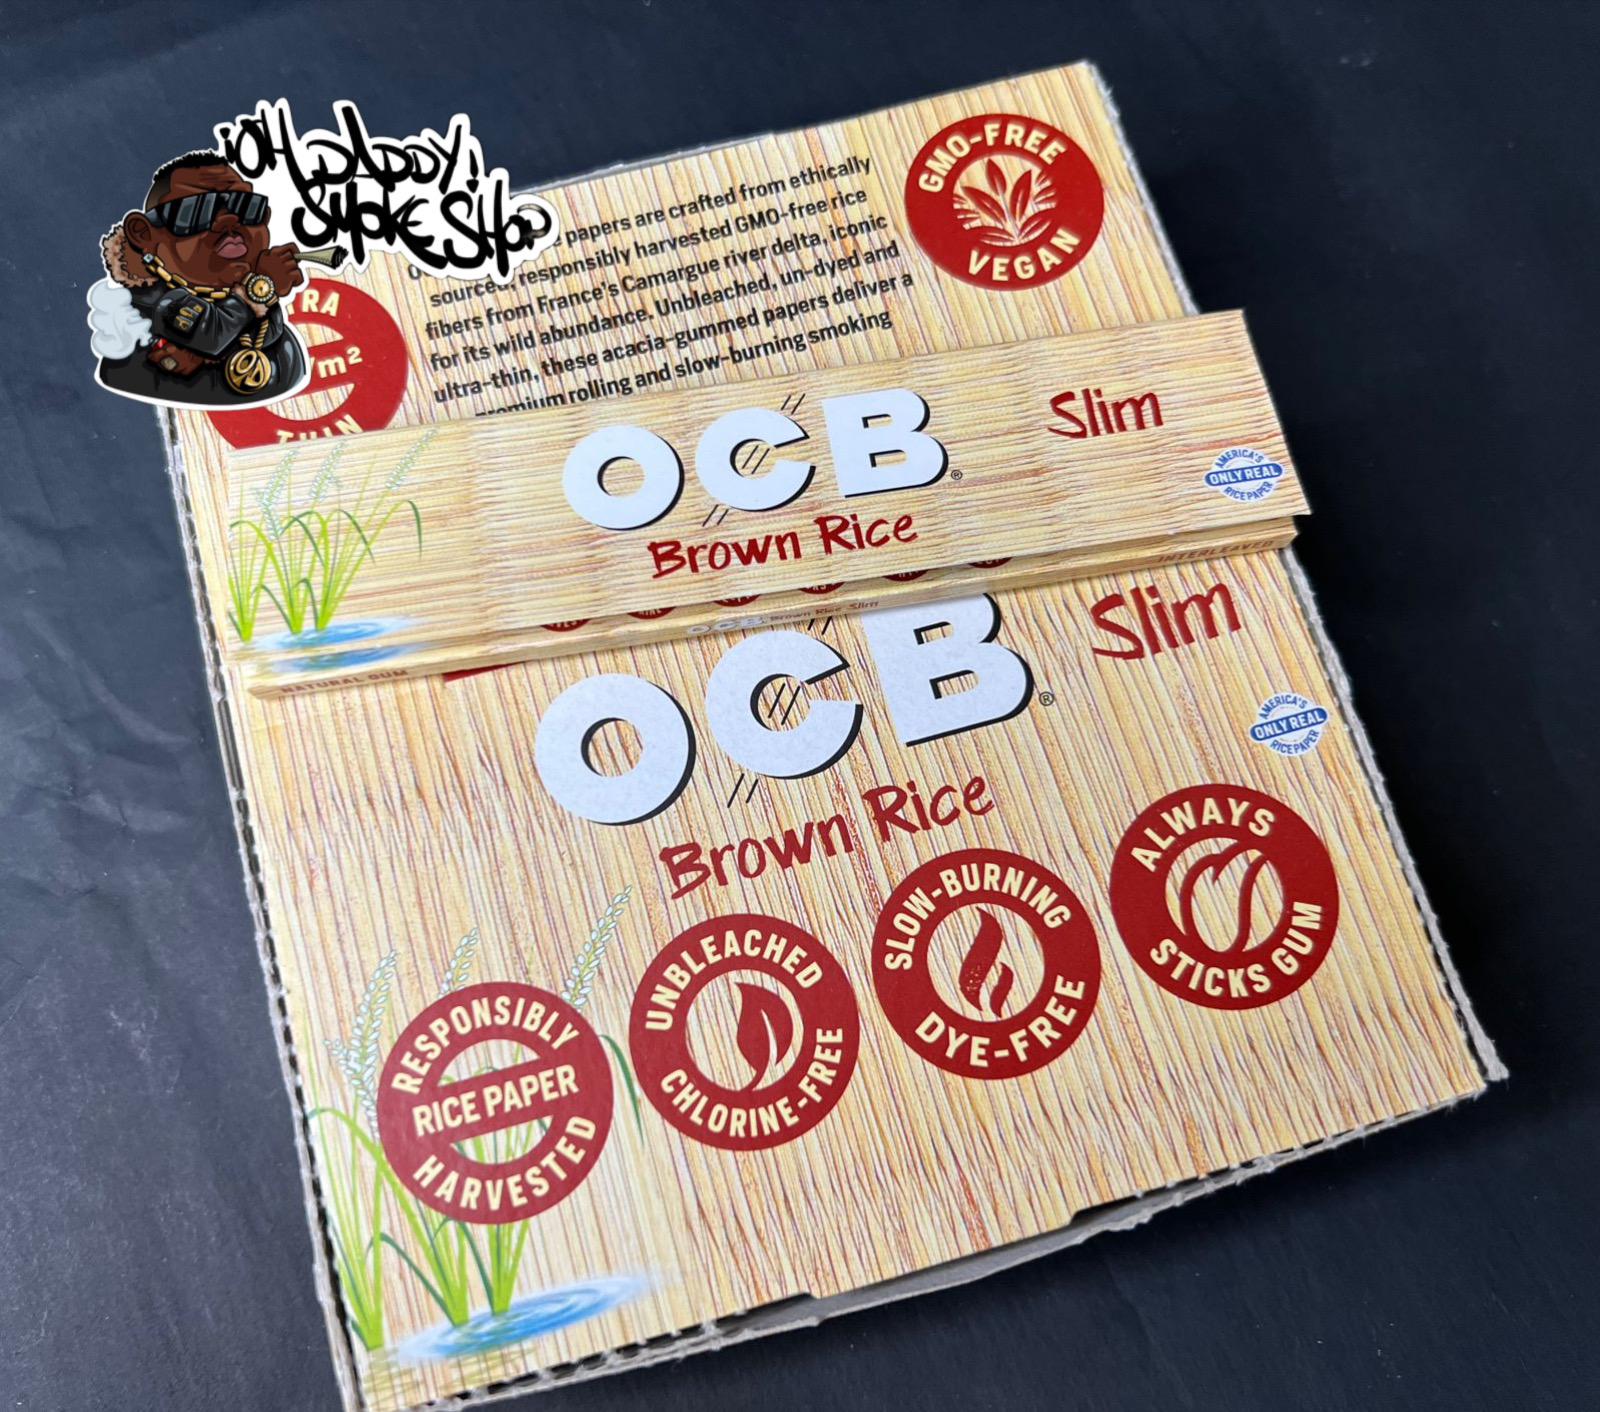 OCB Brown rice Slim king size